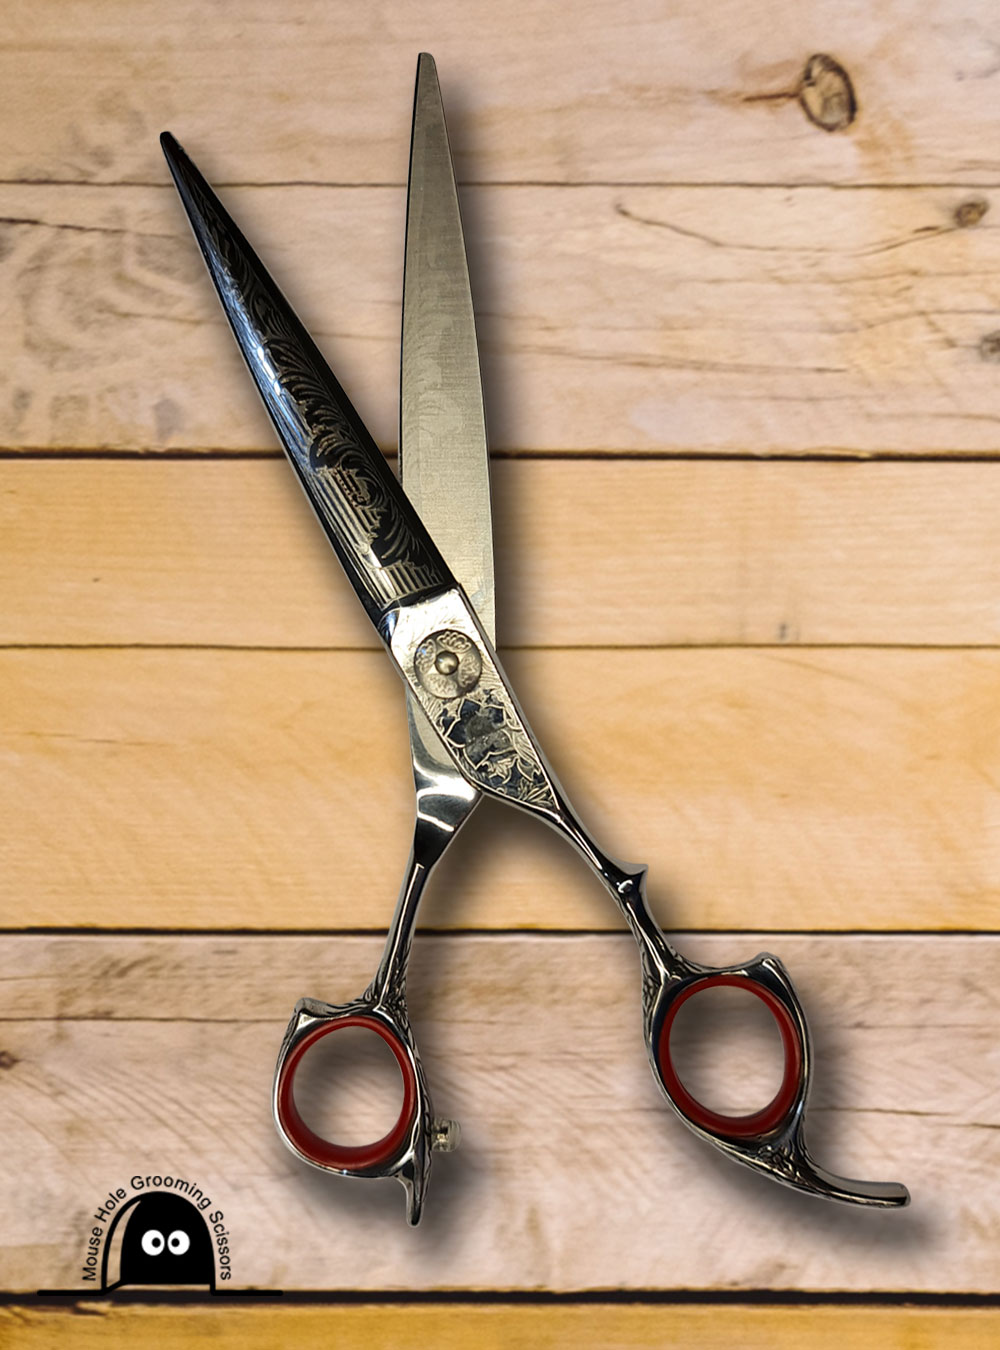 Briard Embossed Straight 7" Pet Grooming Scissors